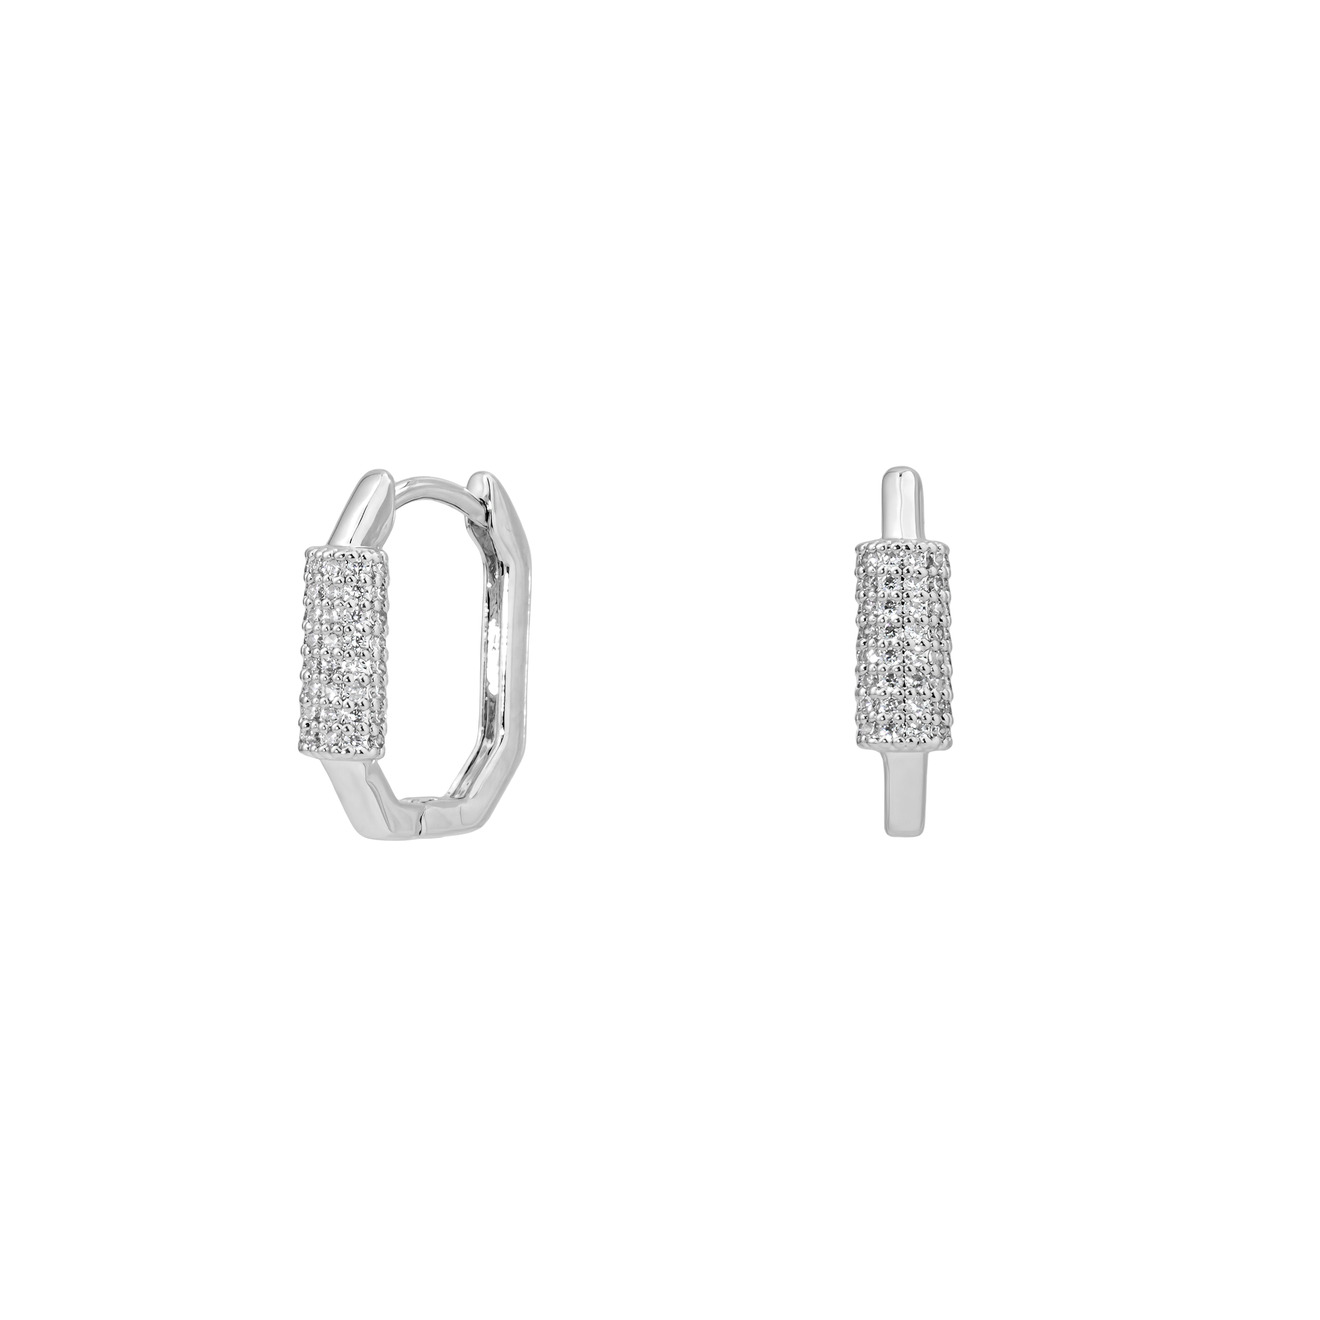 Herald Percy Серебристые серьги-восьмигранники с кристаллами herald percy серебристые серьги с белыми кристаллами